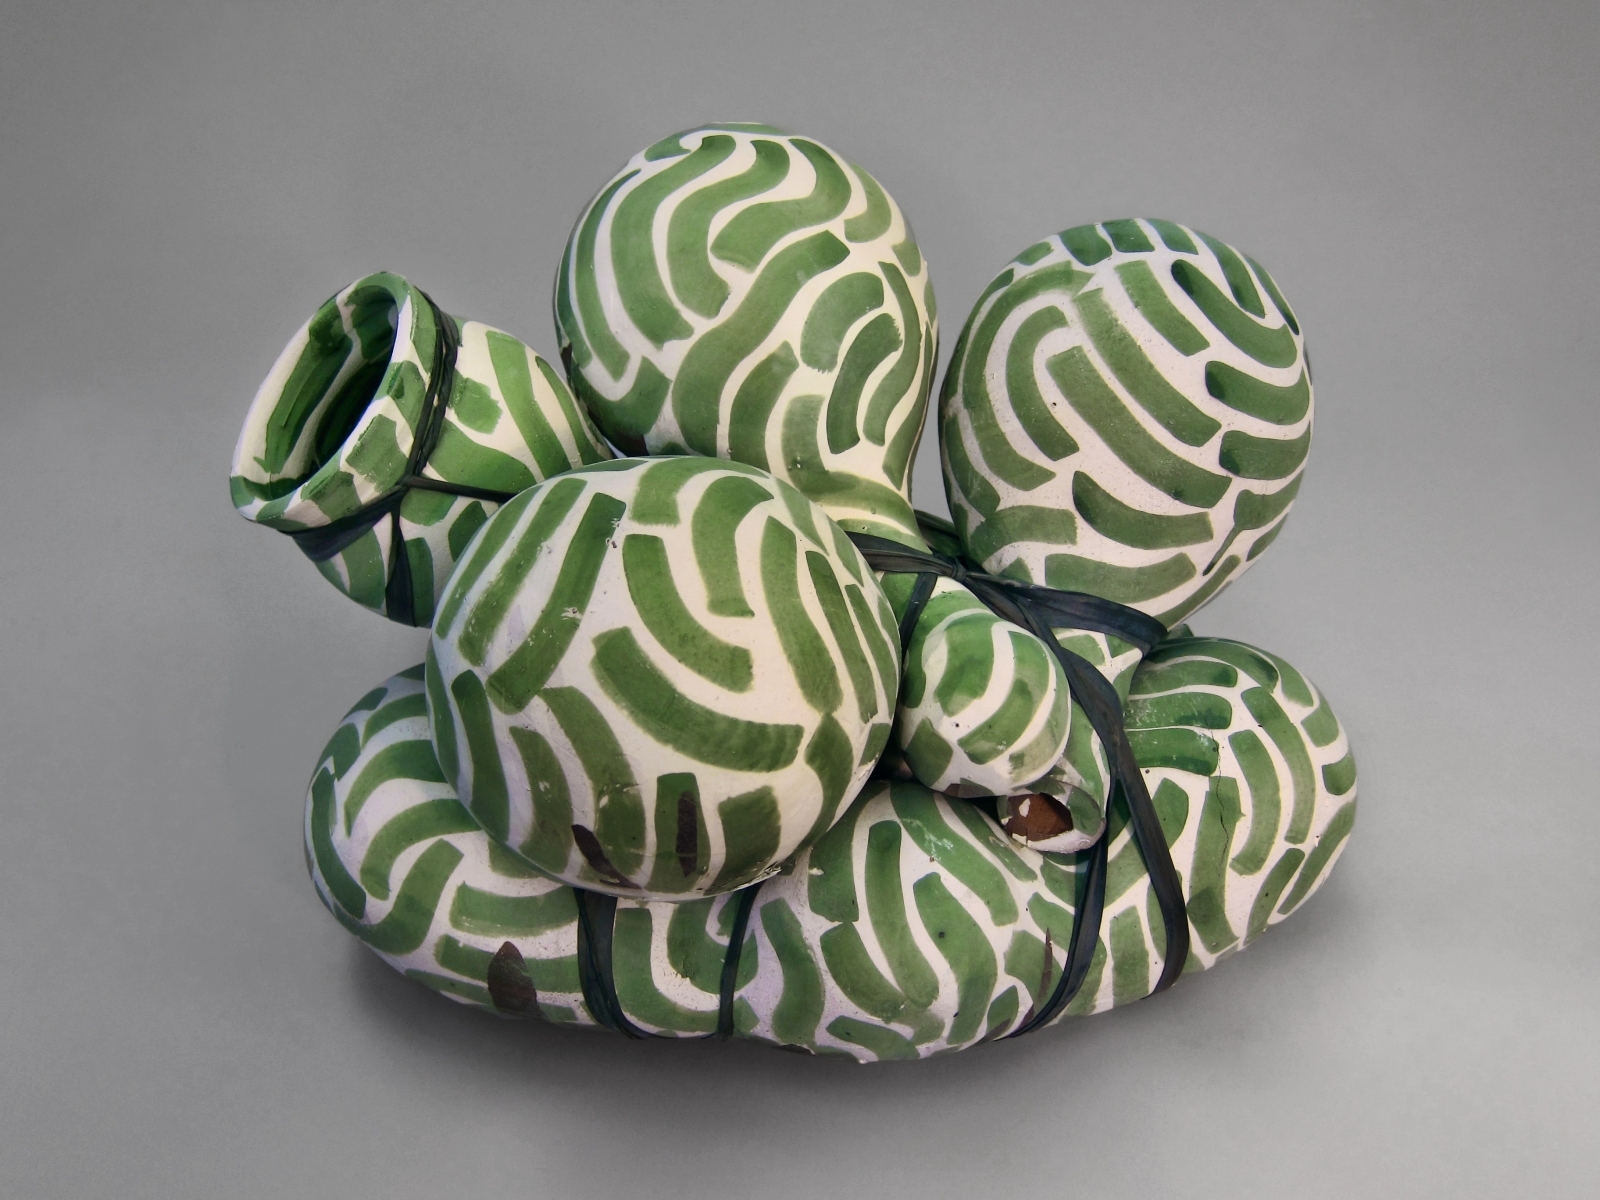 Annabeth Rosen
Green Grass, 2012
fired ceramic, rubber inner tube
13 x 18 x 13 ins.
33 x 45.7 x 33 cm